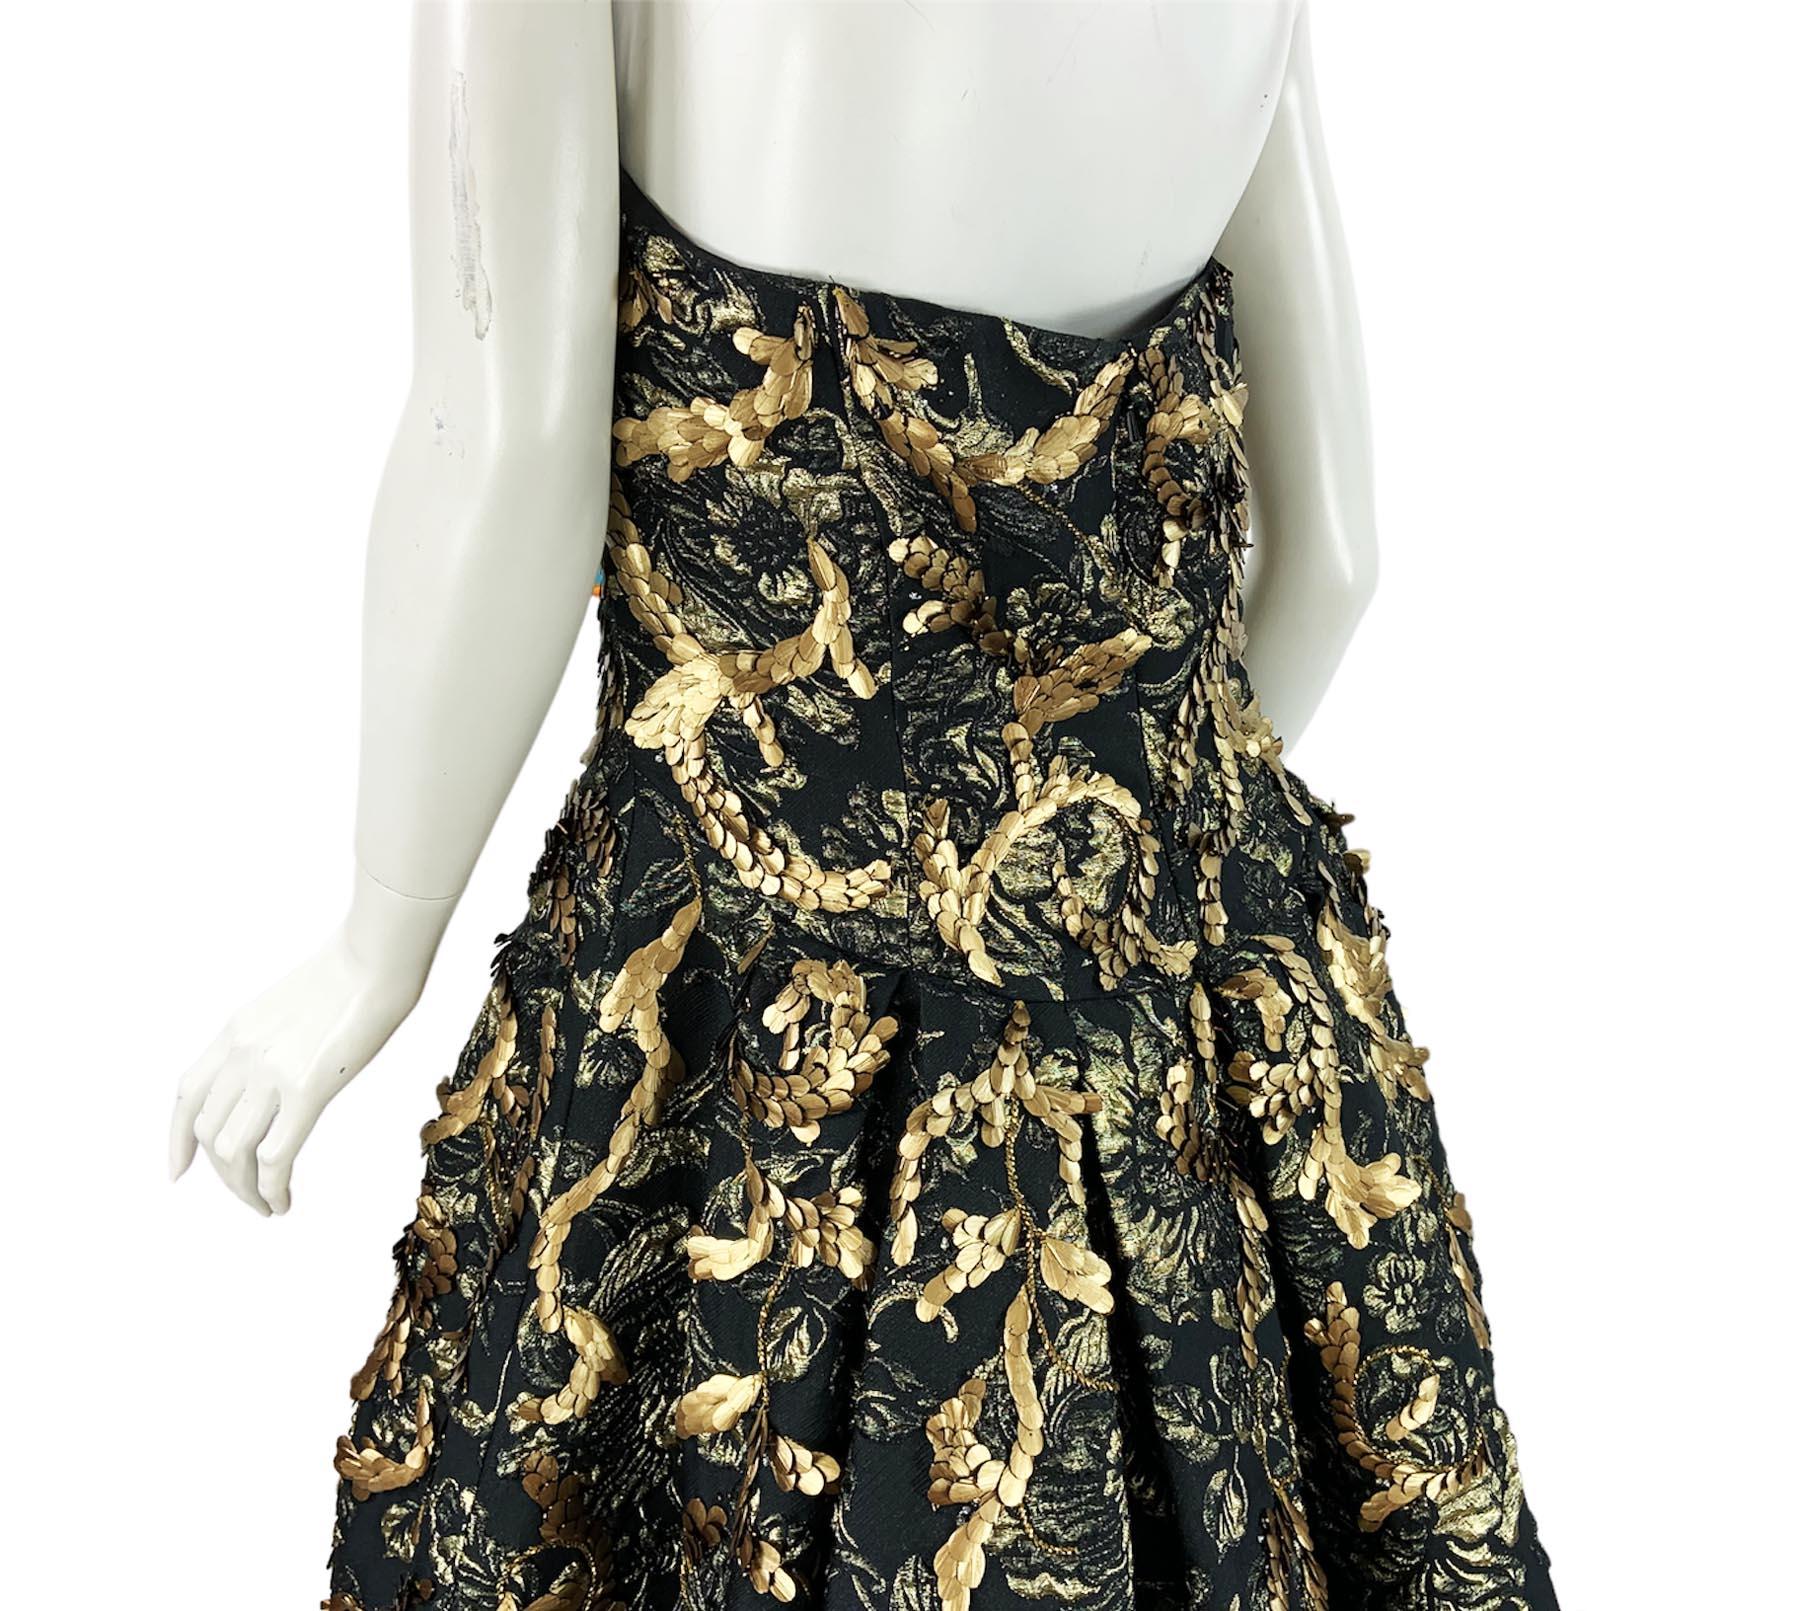 Oscar de la Renta FW 2014 Runway Museum Red Carpet Black Gold Gown Dress L / XL For Sale 9